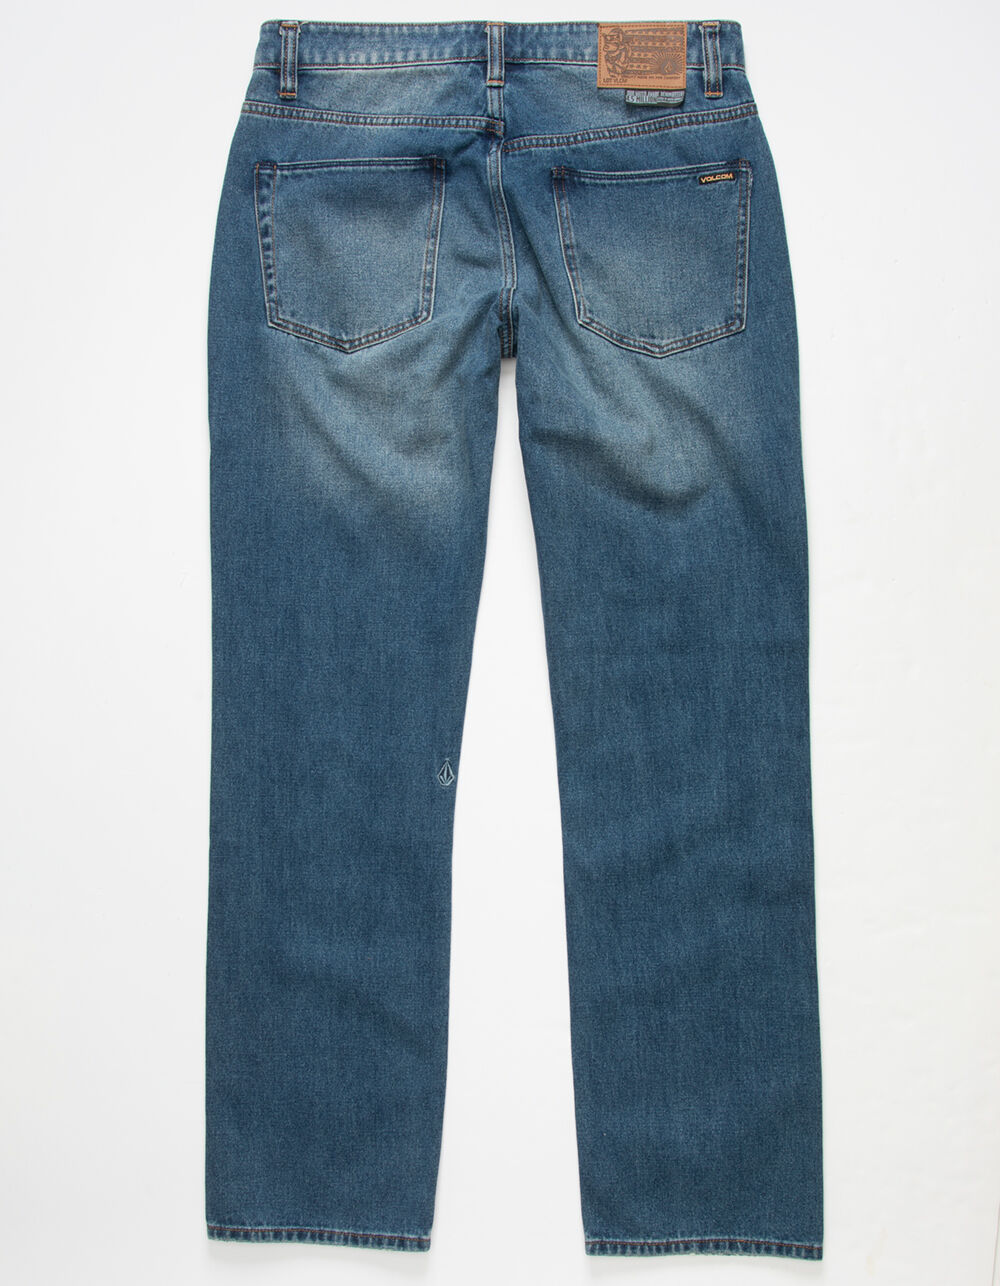 VOLCOM Solver Mens Blue Rinse Modern Straight Jeans - MEDIUM WASH | Tillys